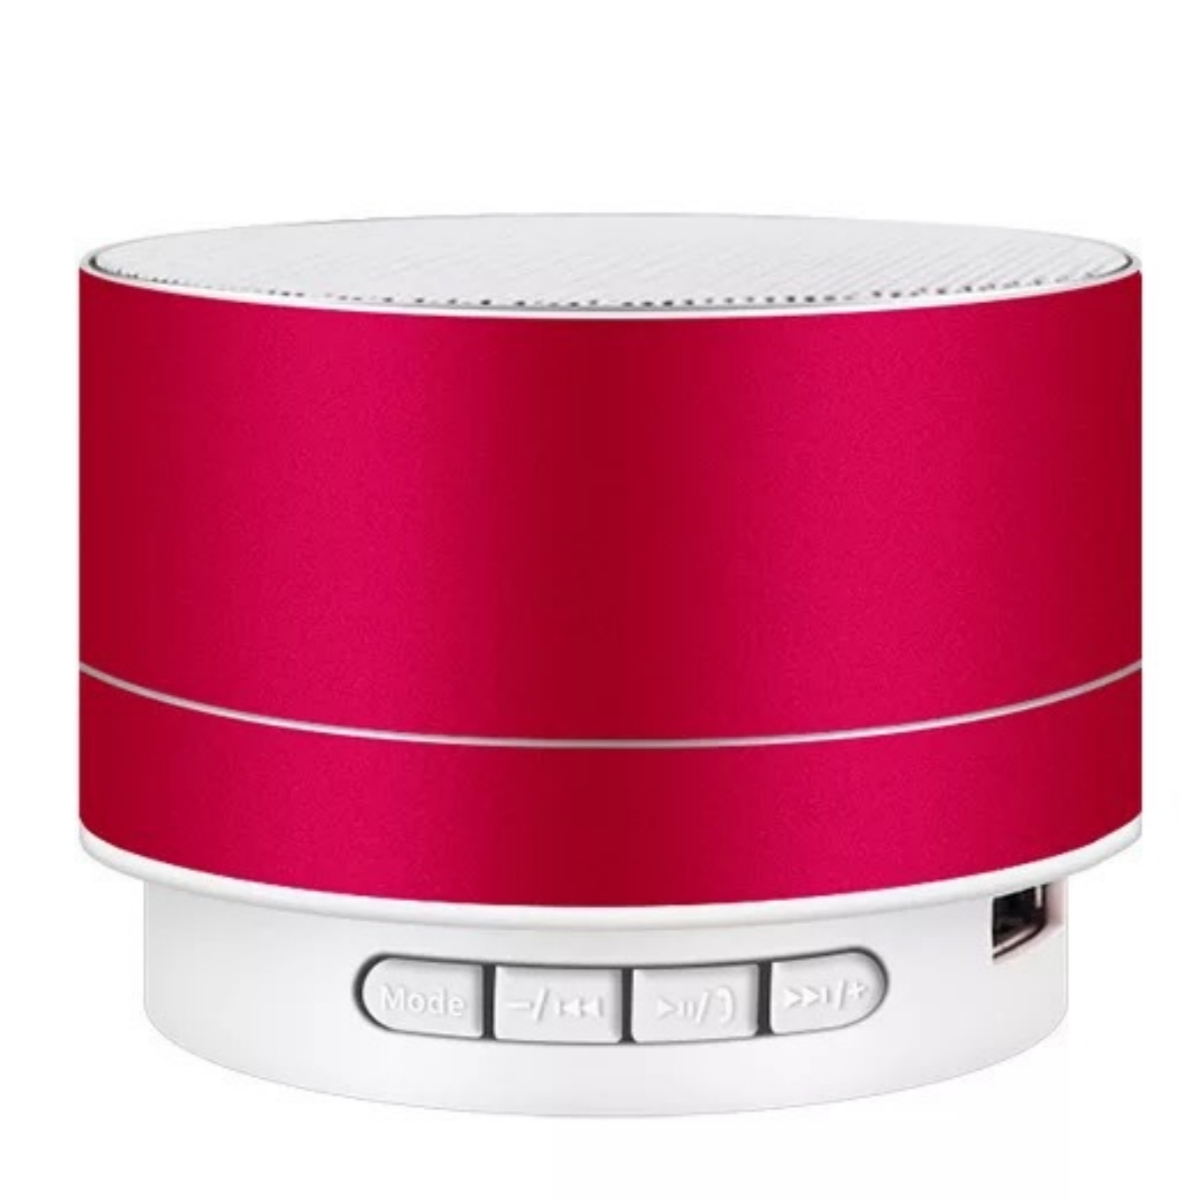 SHAOKE Bluetooth-Lautsprecher - Kompakt Tragbar 360° Bluetooth Hochwertig Lautsprecher, Rot Surround-Sound